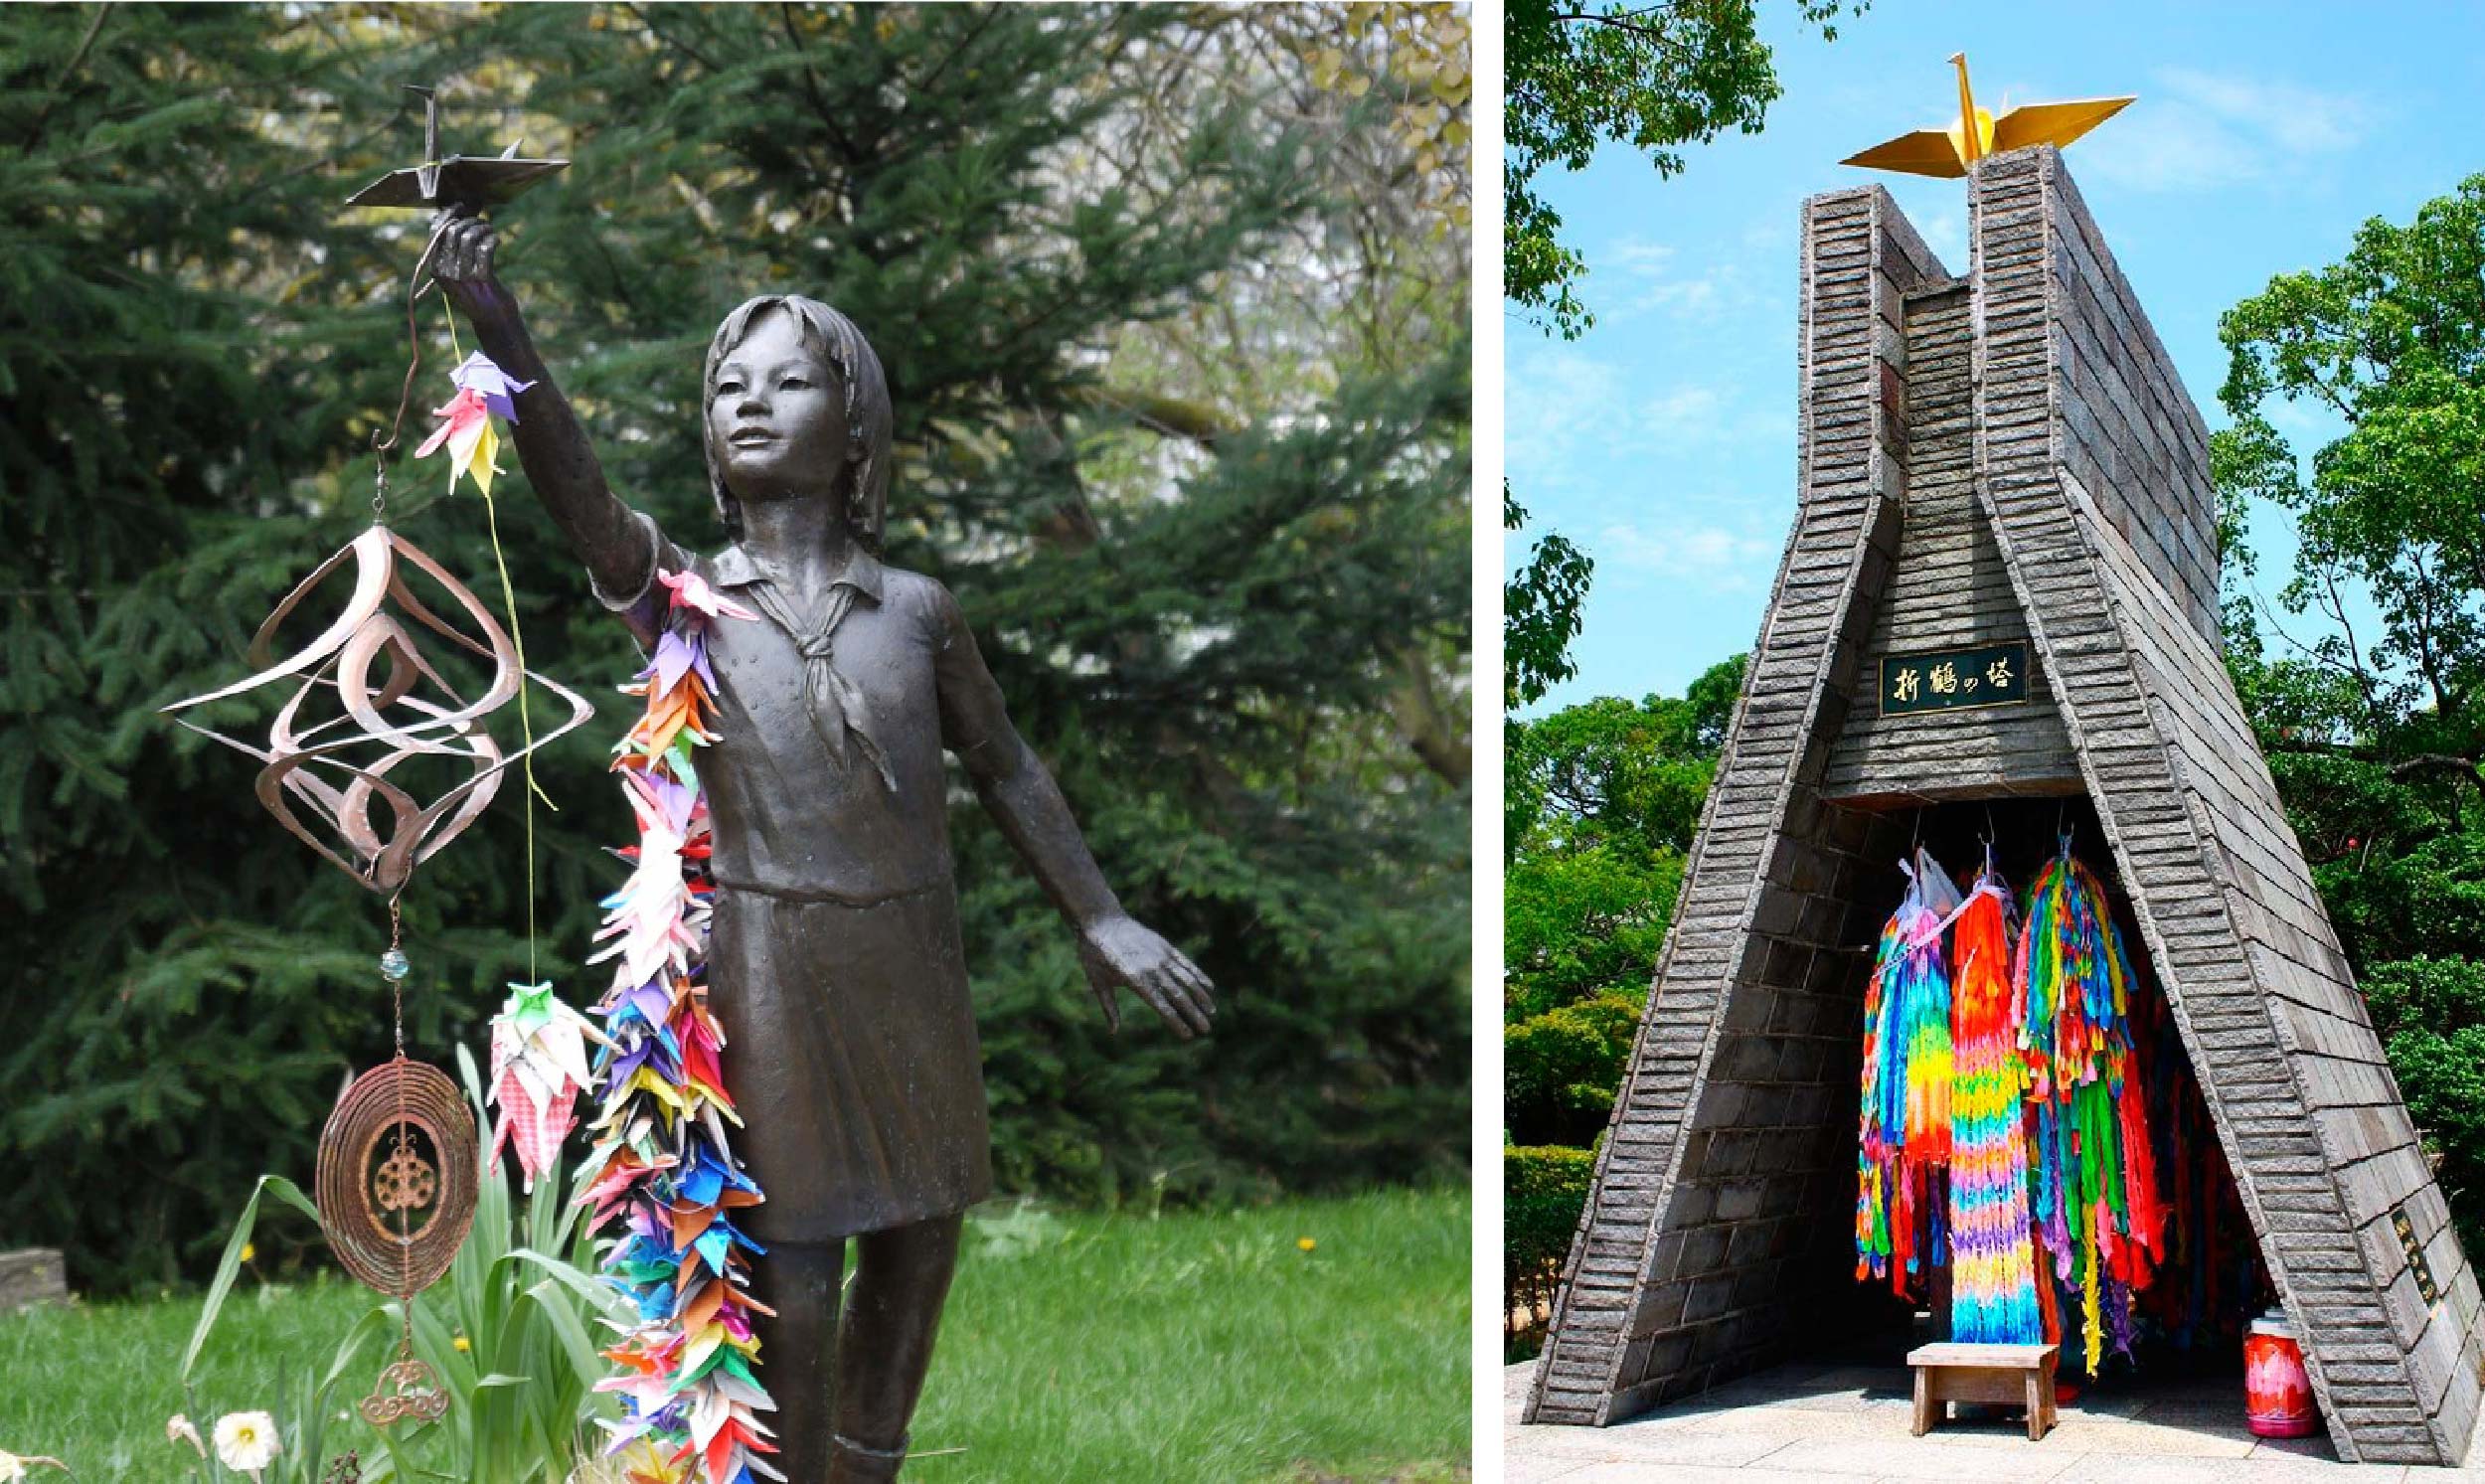 Immagine a sinistra con statua di una bambina cn accessorio fatto di mille origami di gru. Immagine a destra con capanna all'interno della quale ci sono tanti origami di gru. 